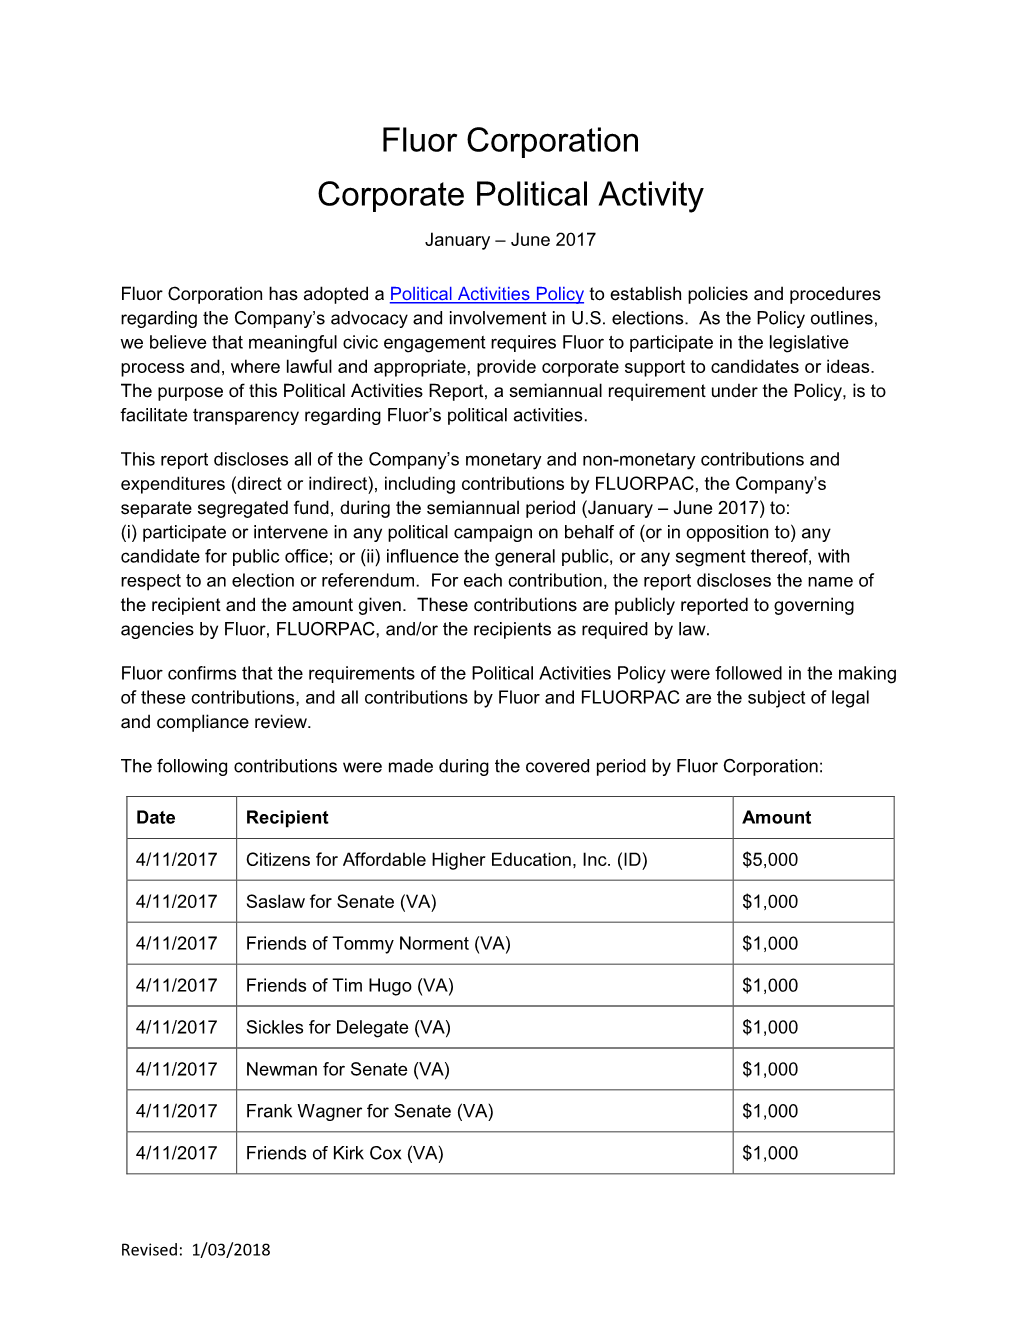 Fluor Corporation Corporate Political Activity January – June 2017